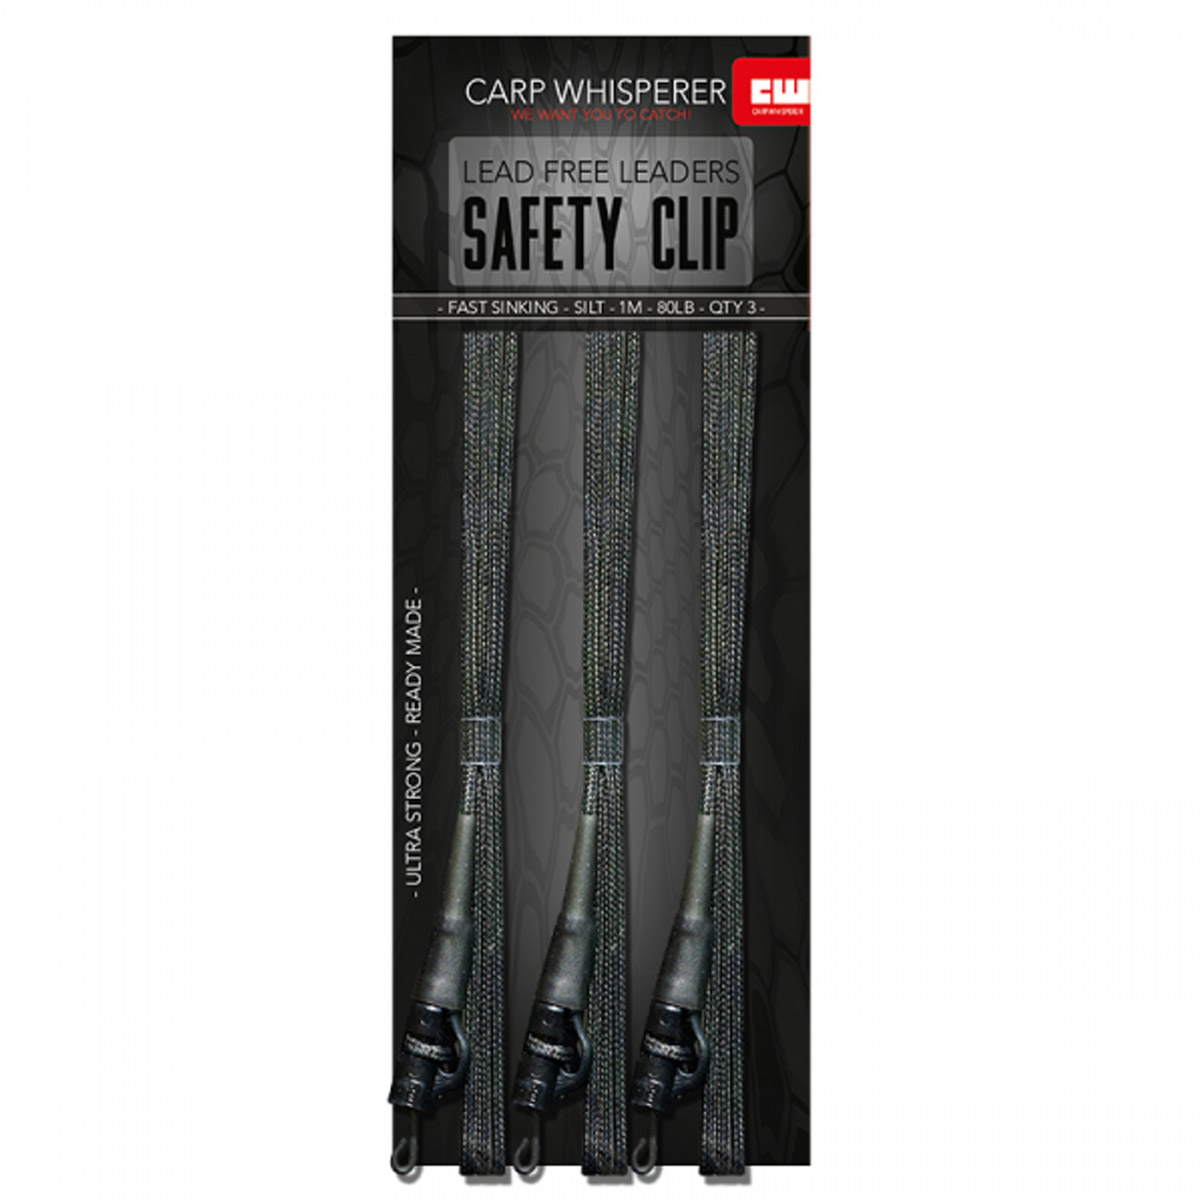 Carp Whisperer - Safety Clip Leaders - 1 mtr -  Silt